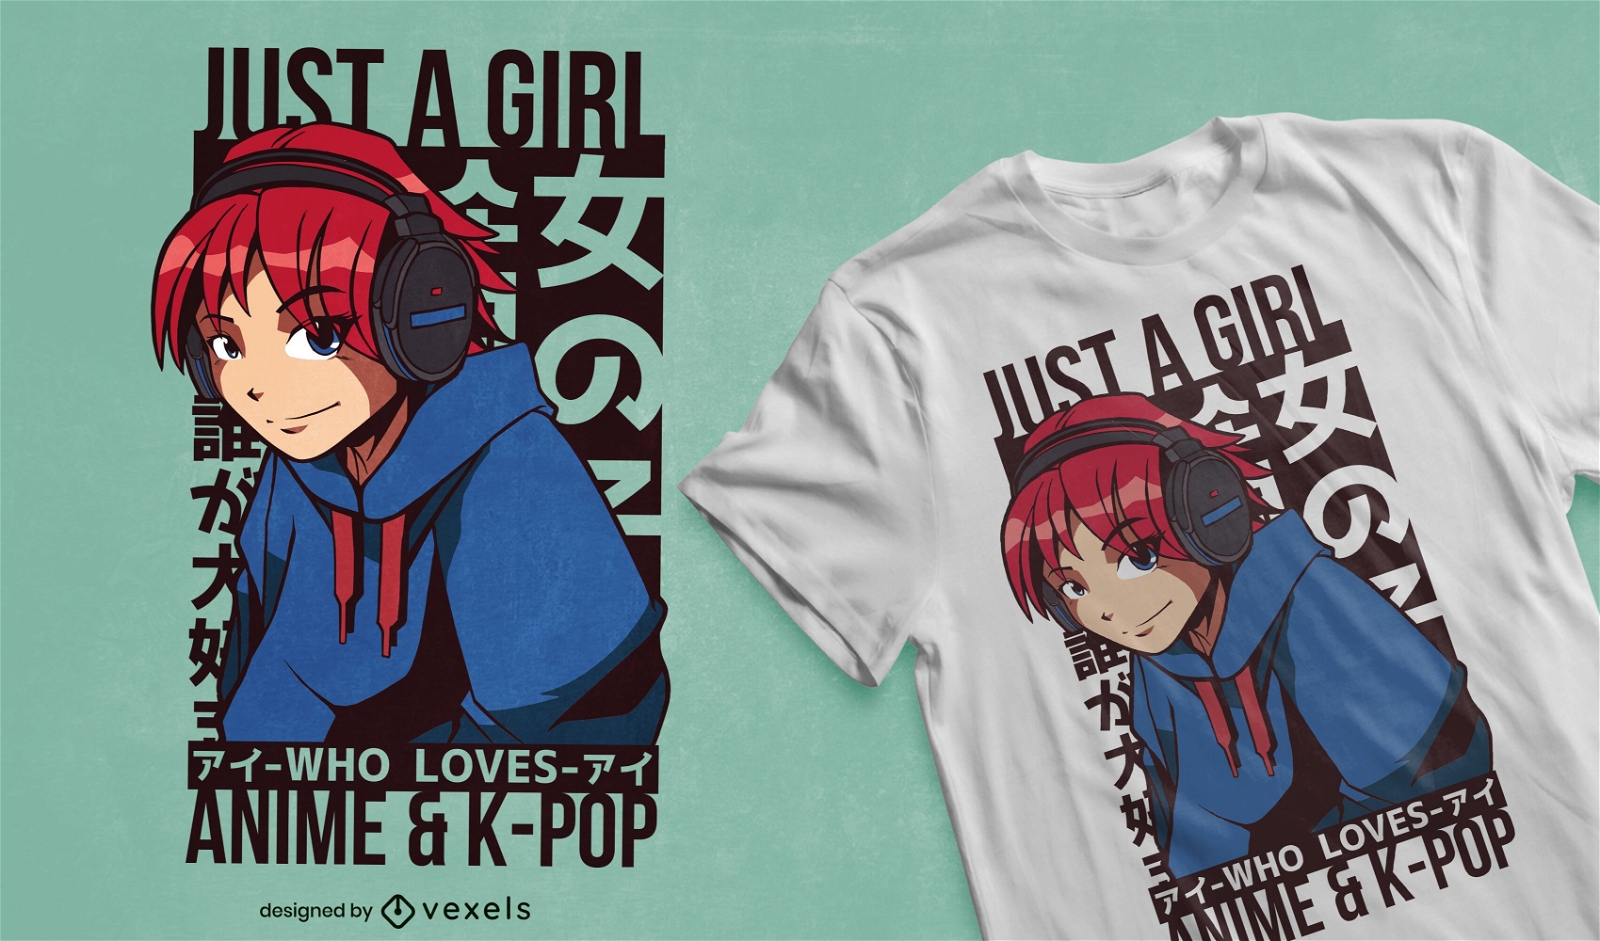 Girl loves anime & kpop t-shirt design